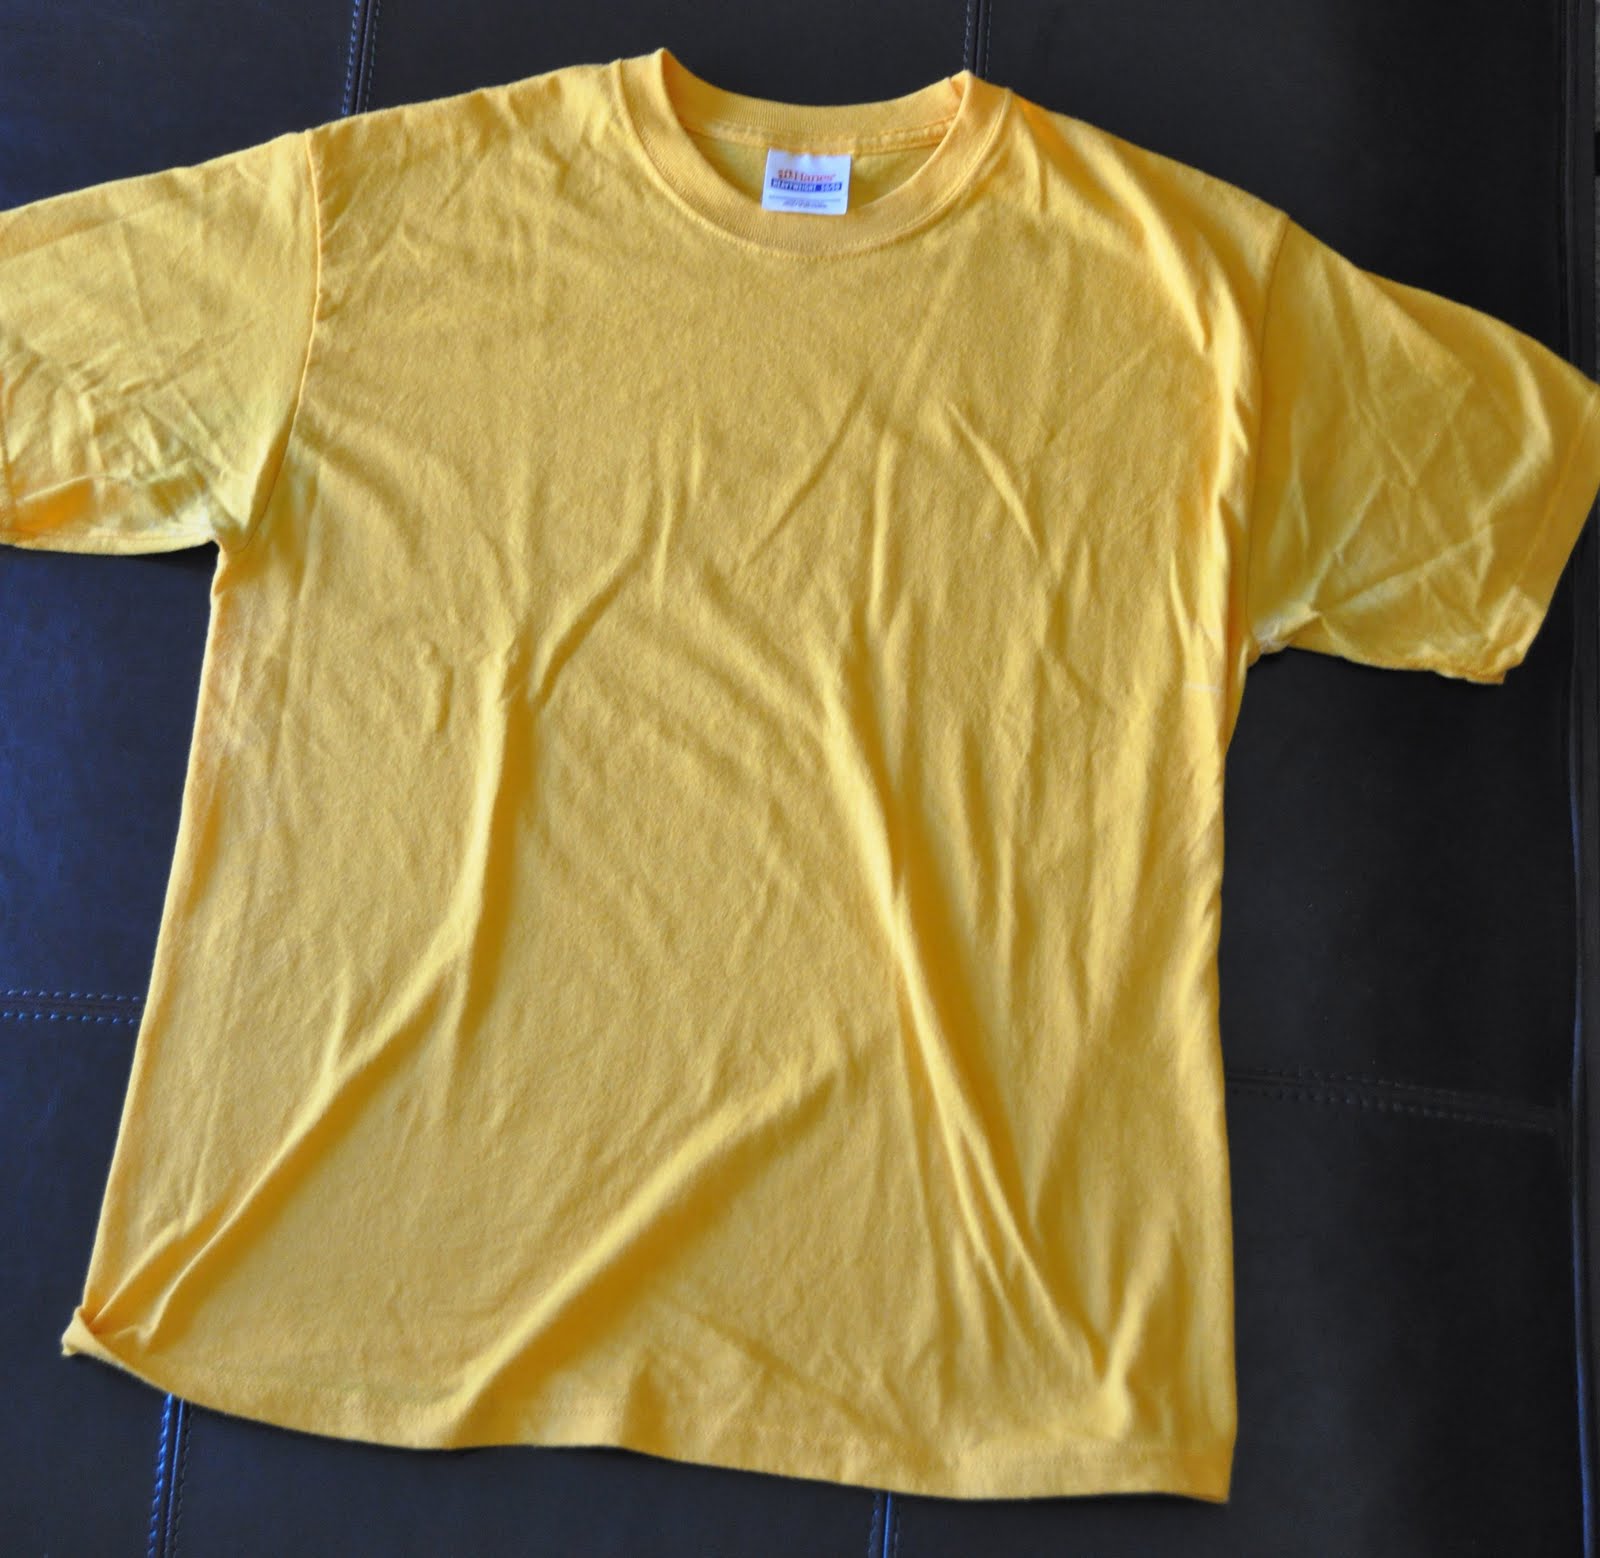 Ten Dollar Tshirts: T-SHIRTS